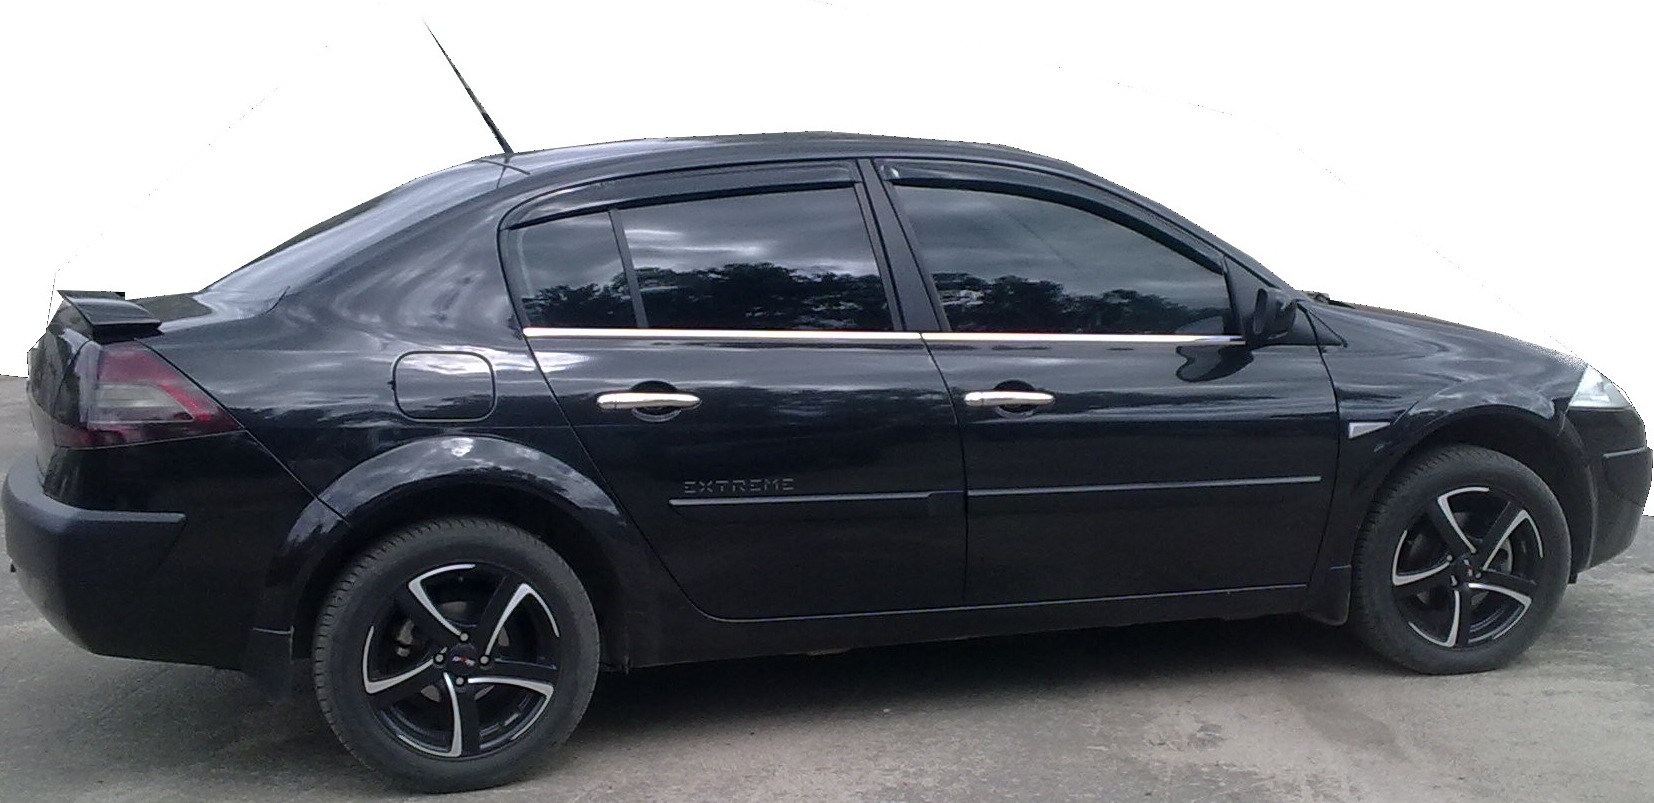 Рено Меган 2 седан черный на литье